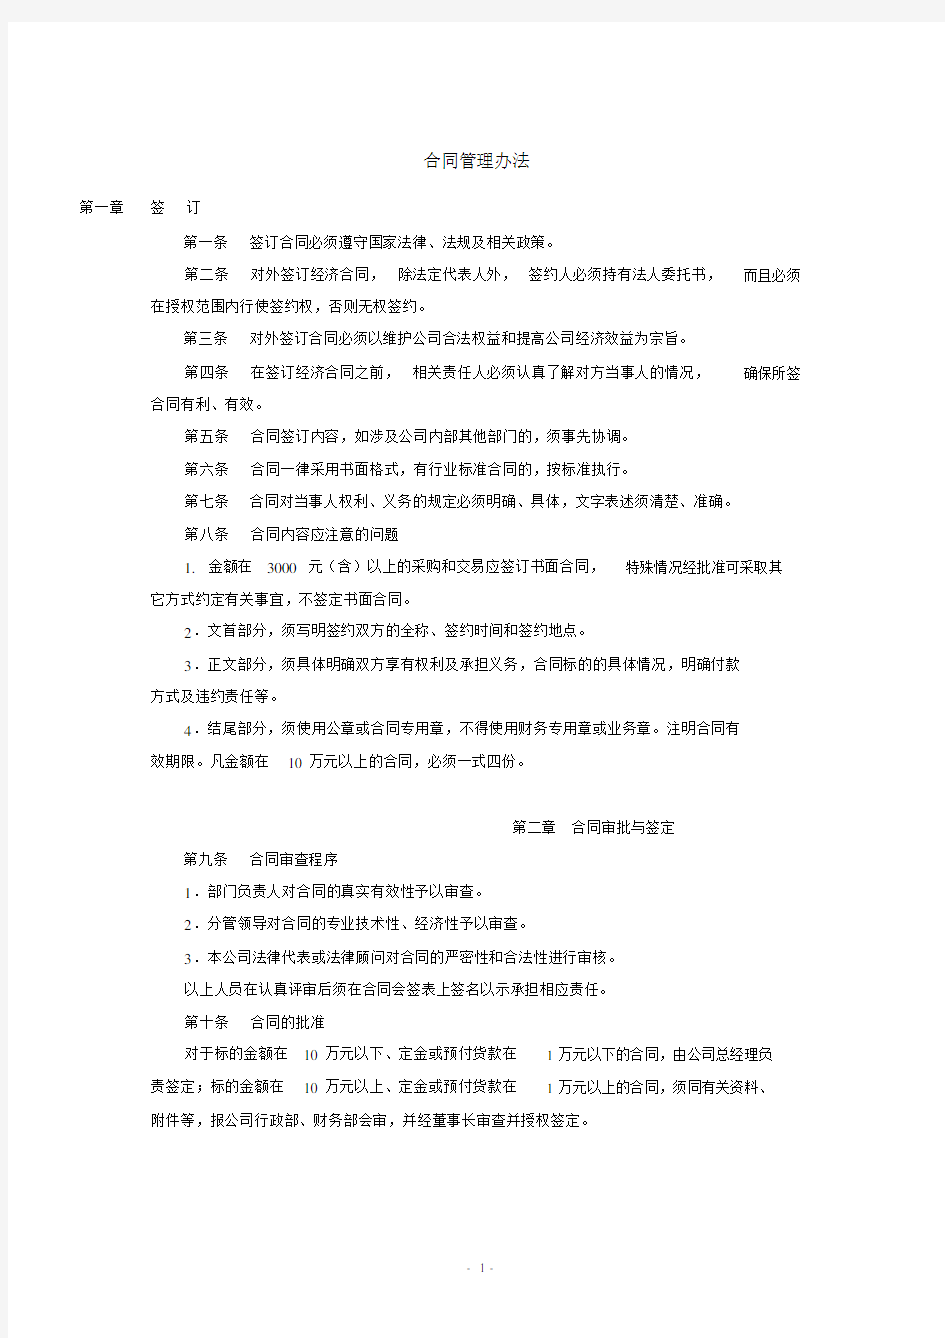 (完整版)企业行政管理制度大全(附表格).docx